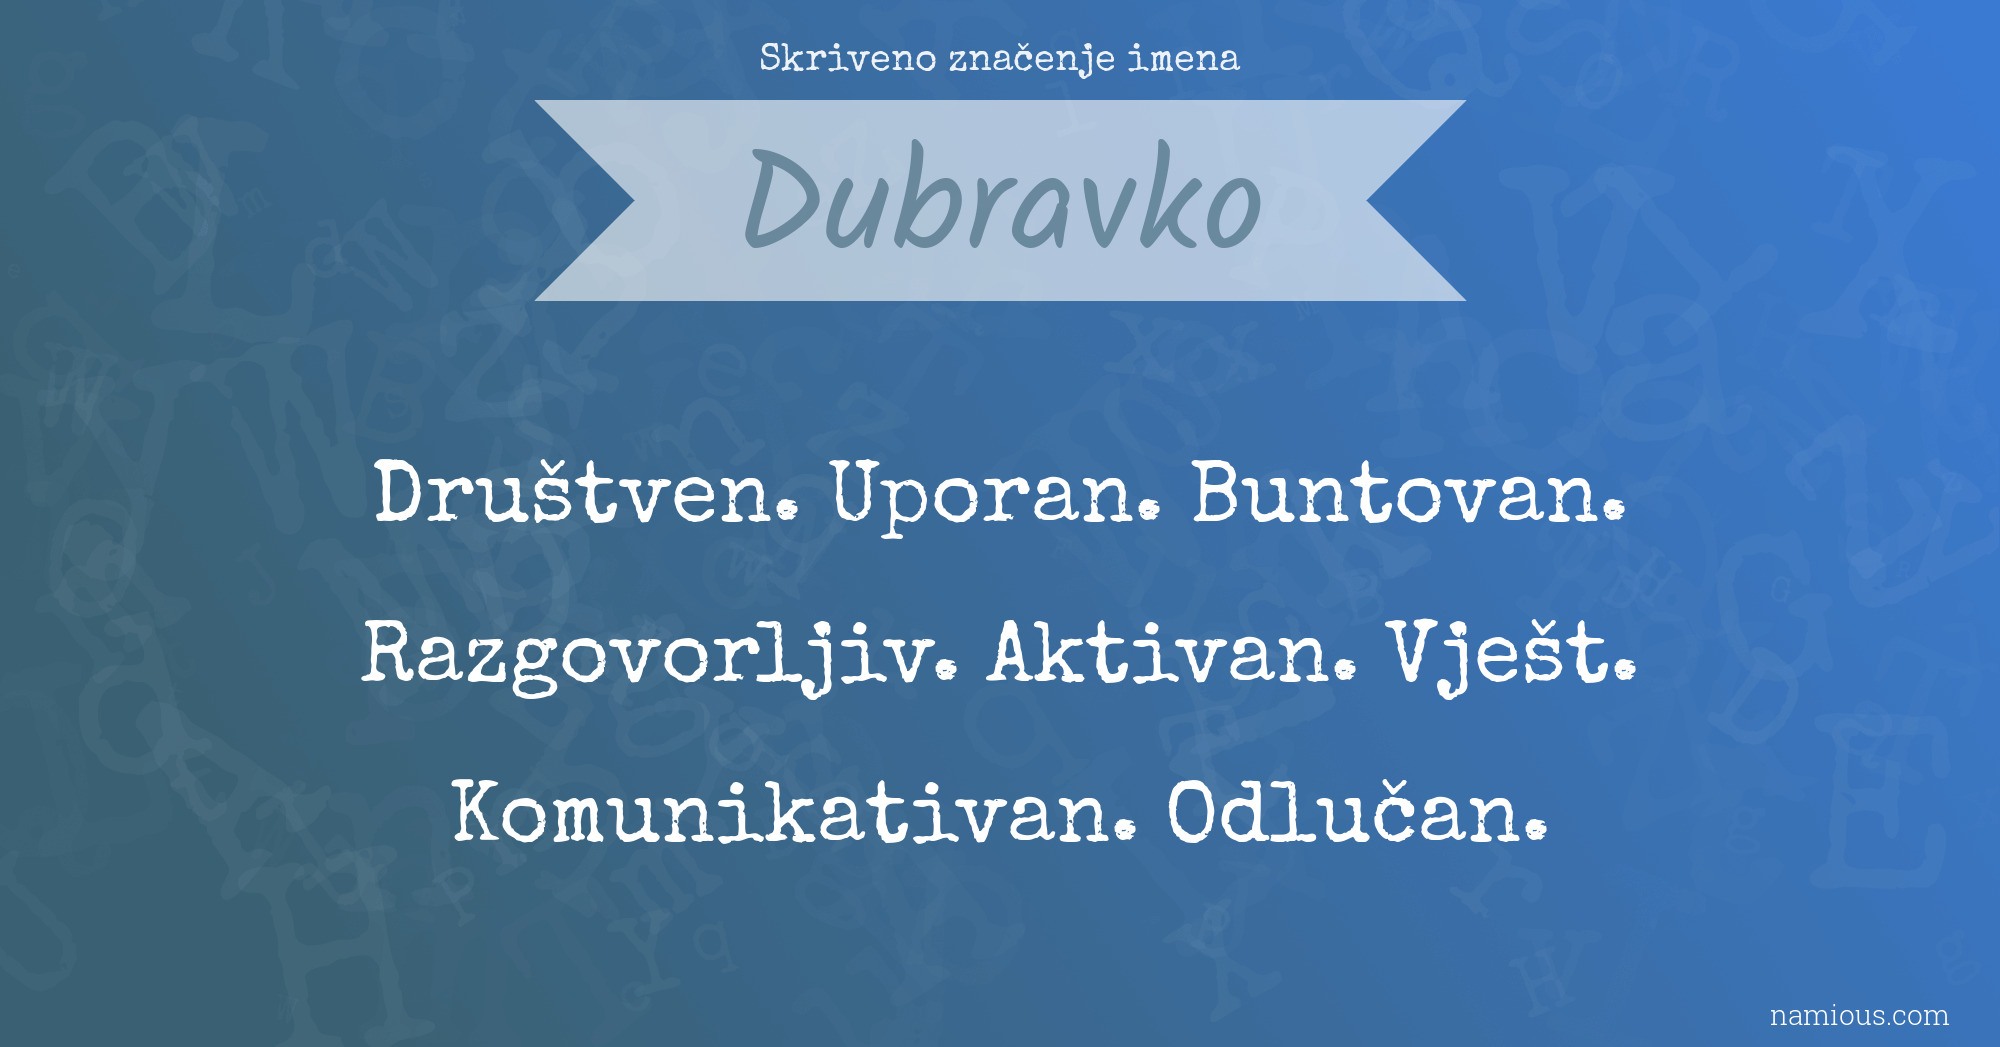 Skriveno značenje imena Dubravko